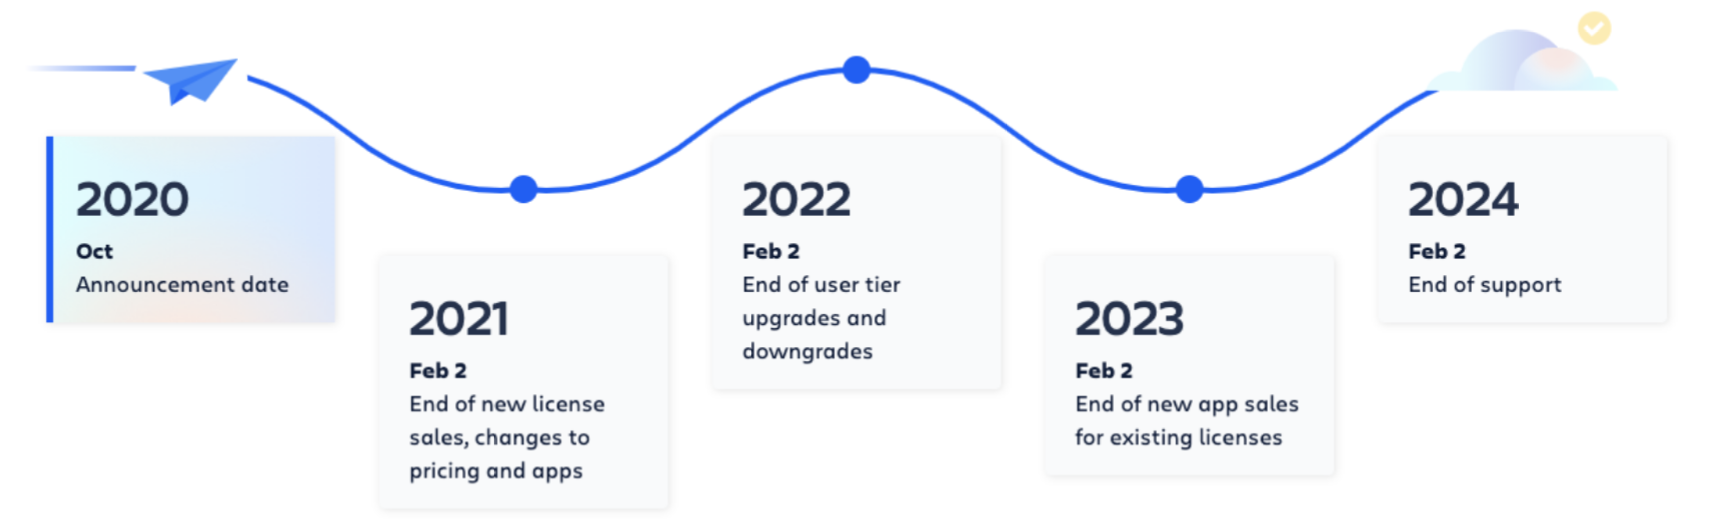 Atlassian updates<br />
Atlassian updates 2023